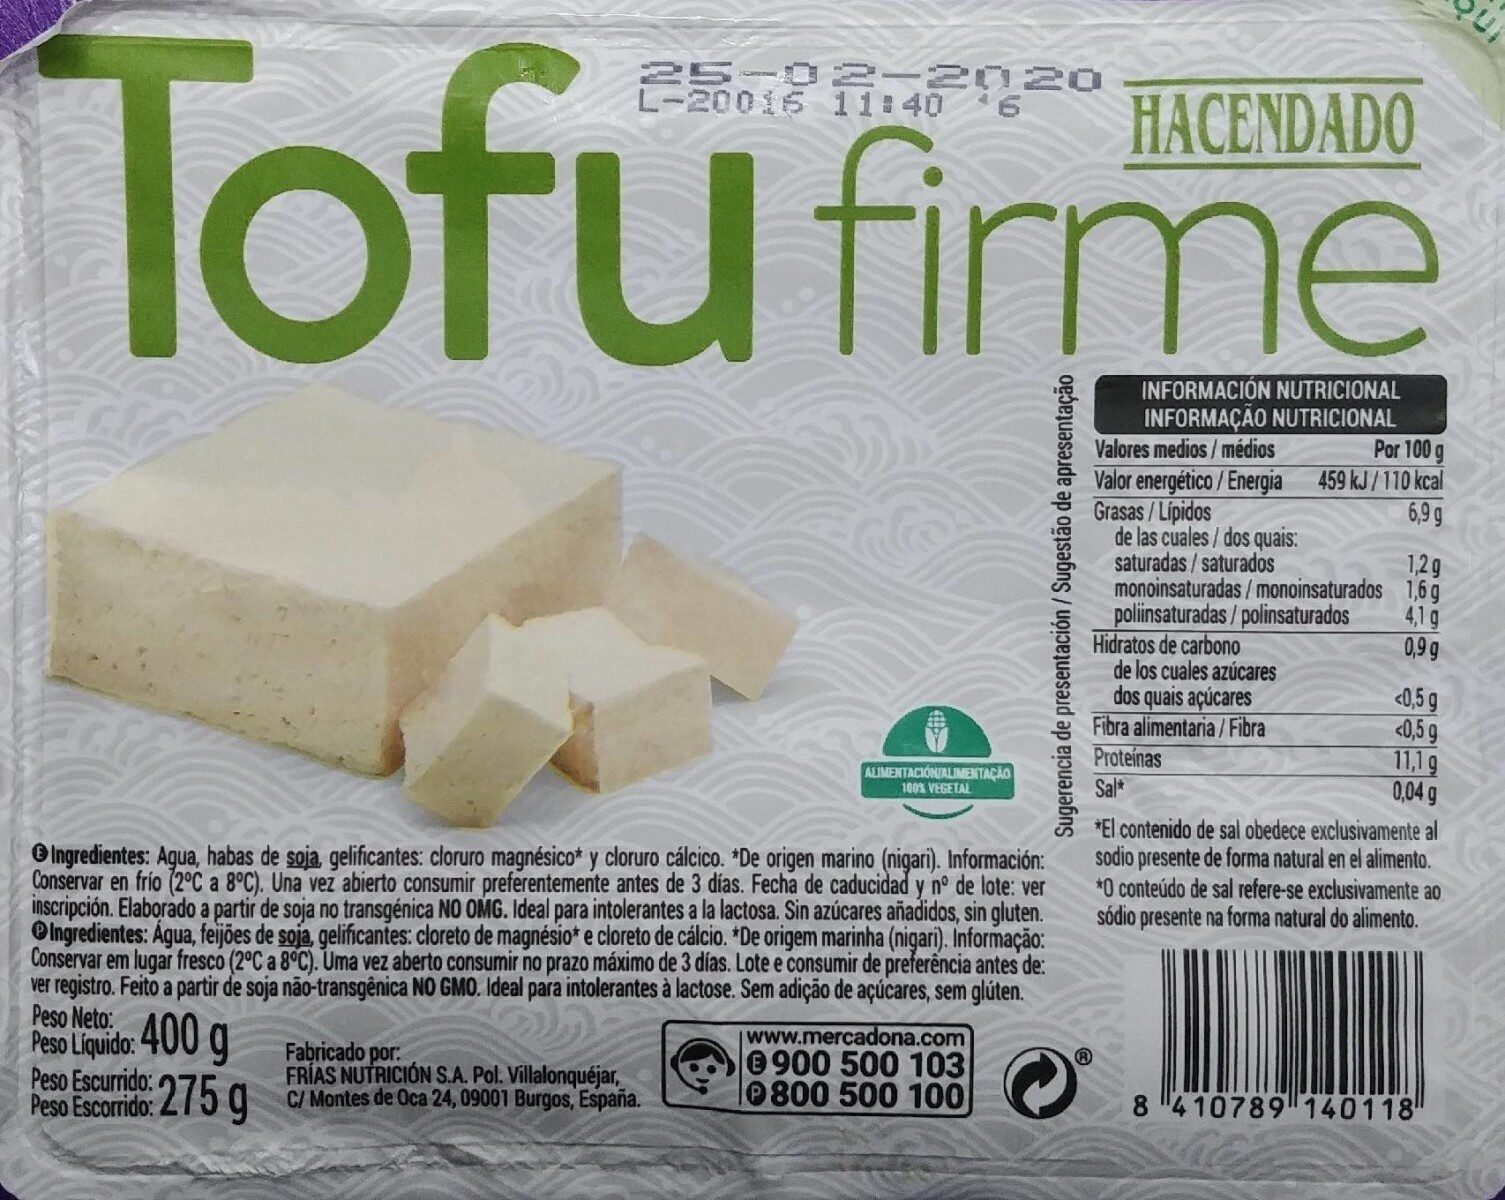 Tofu firme - Produit - en